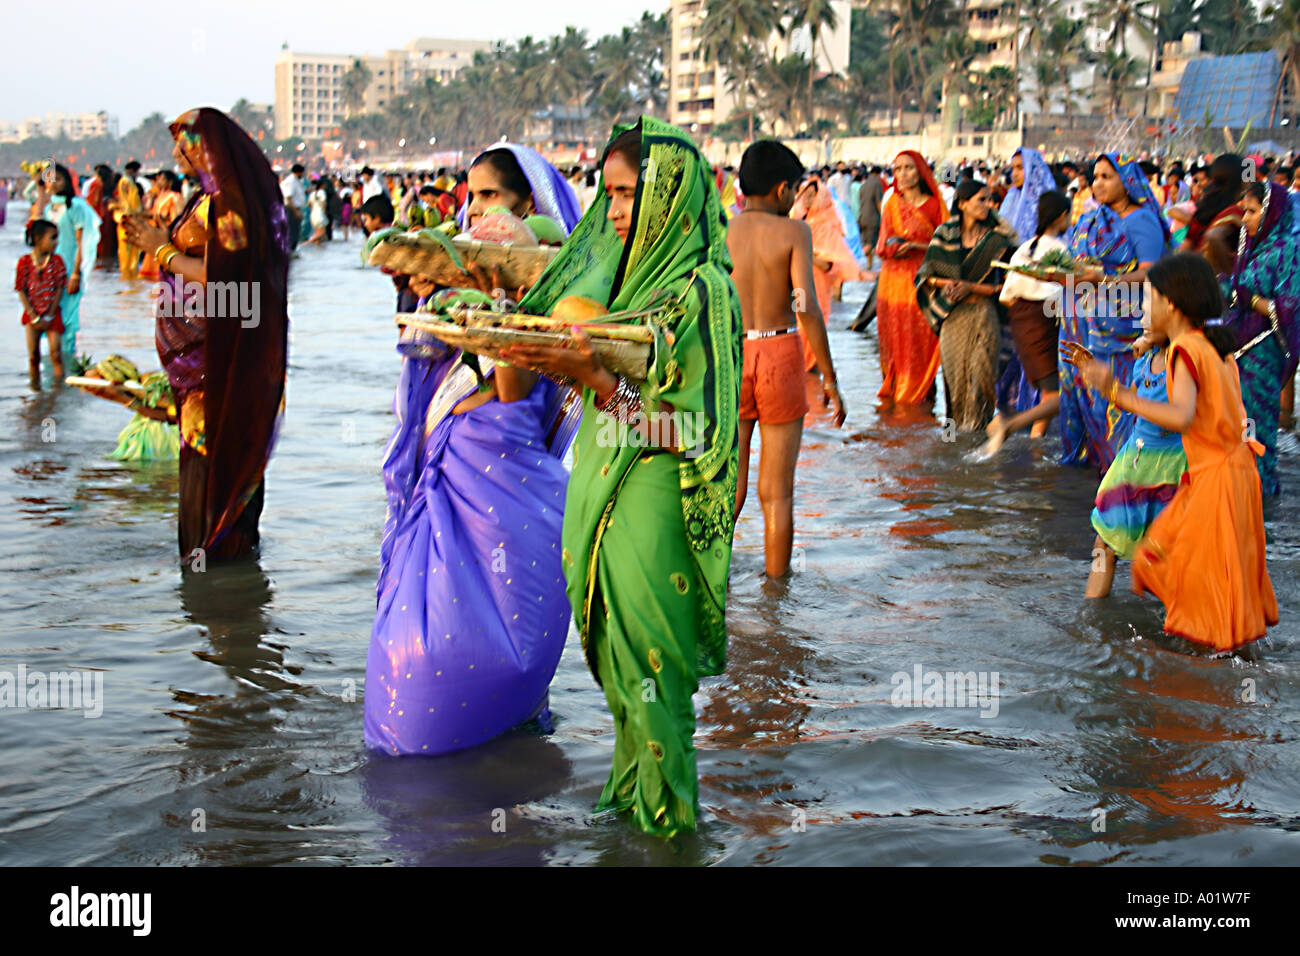 Indisch-hinduistischen Frauen in Saris Vorbereitung religiöse Rituale am Arabischen Meer am Chat Puja Tag in Bombay jetzt Mumbai Indien Stockfoto